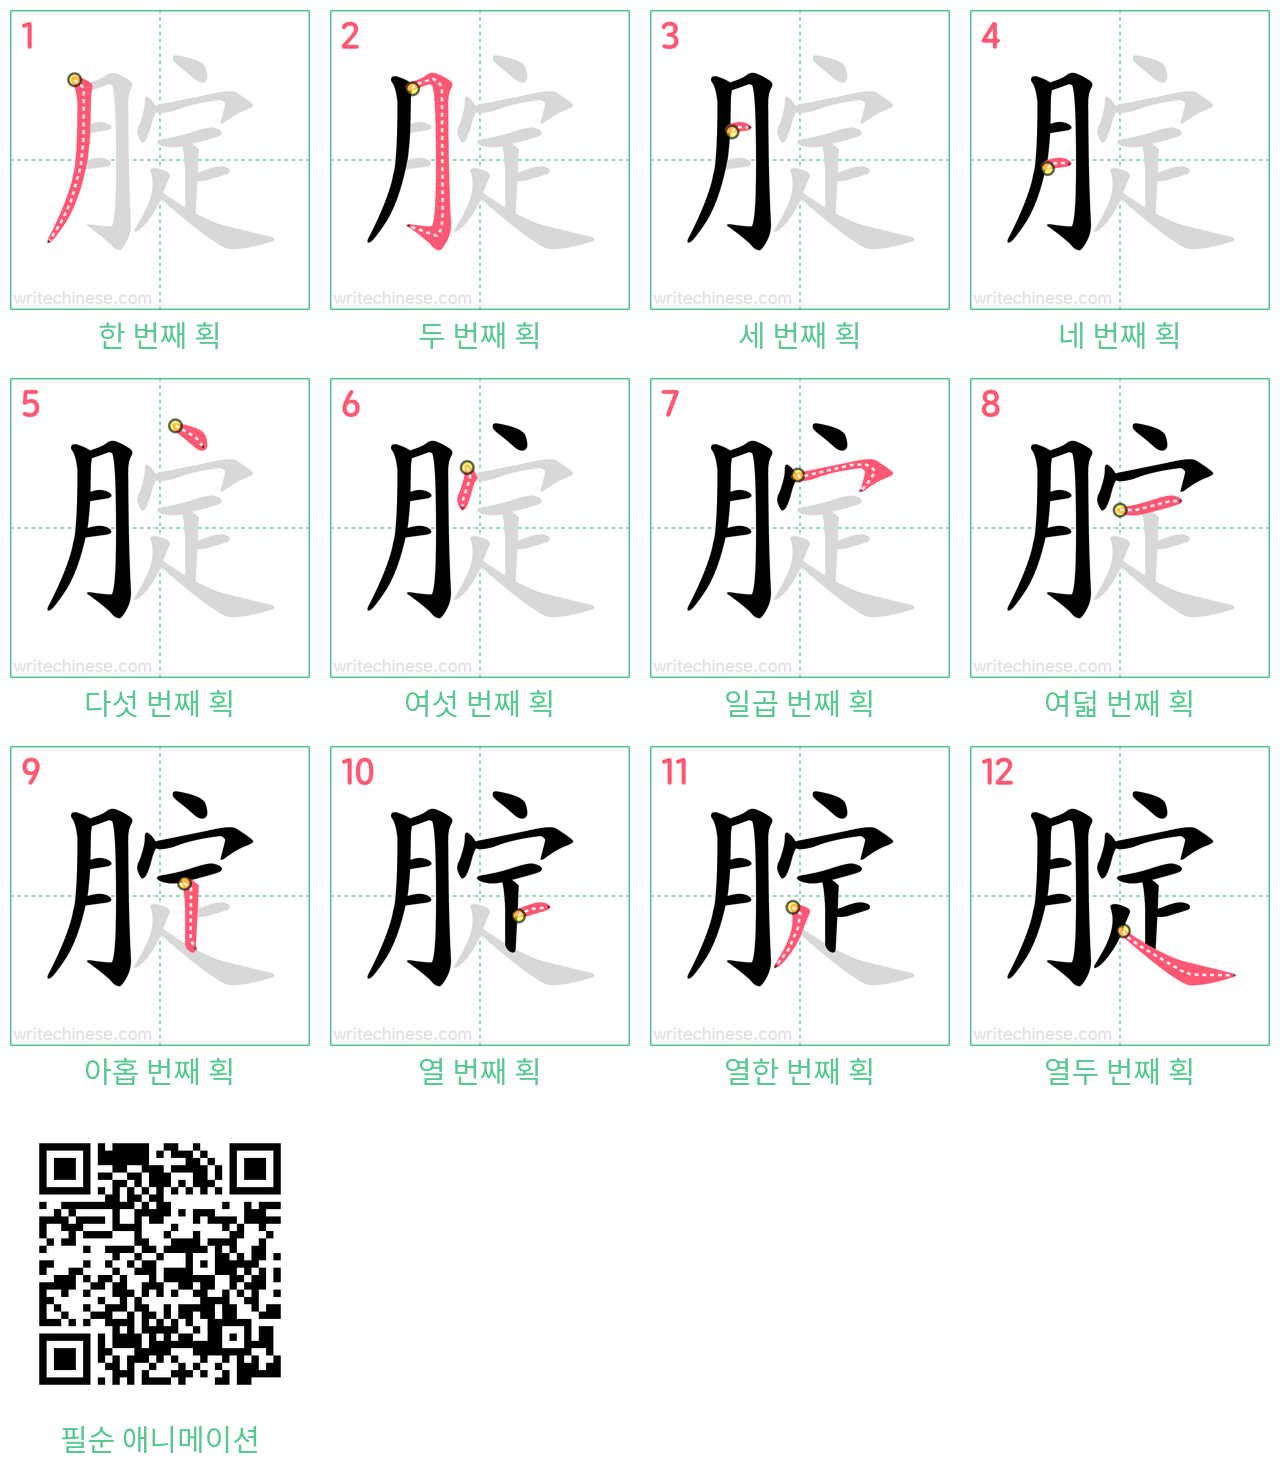 腚 step-by-step stroke order diagrams